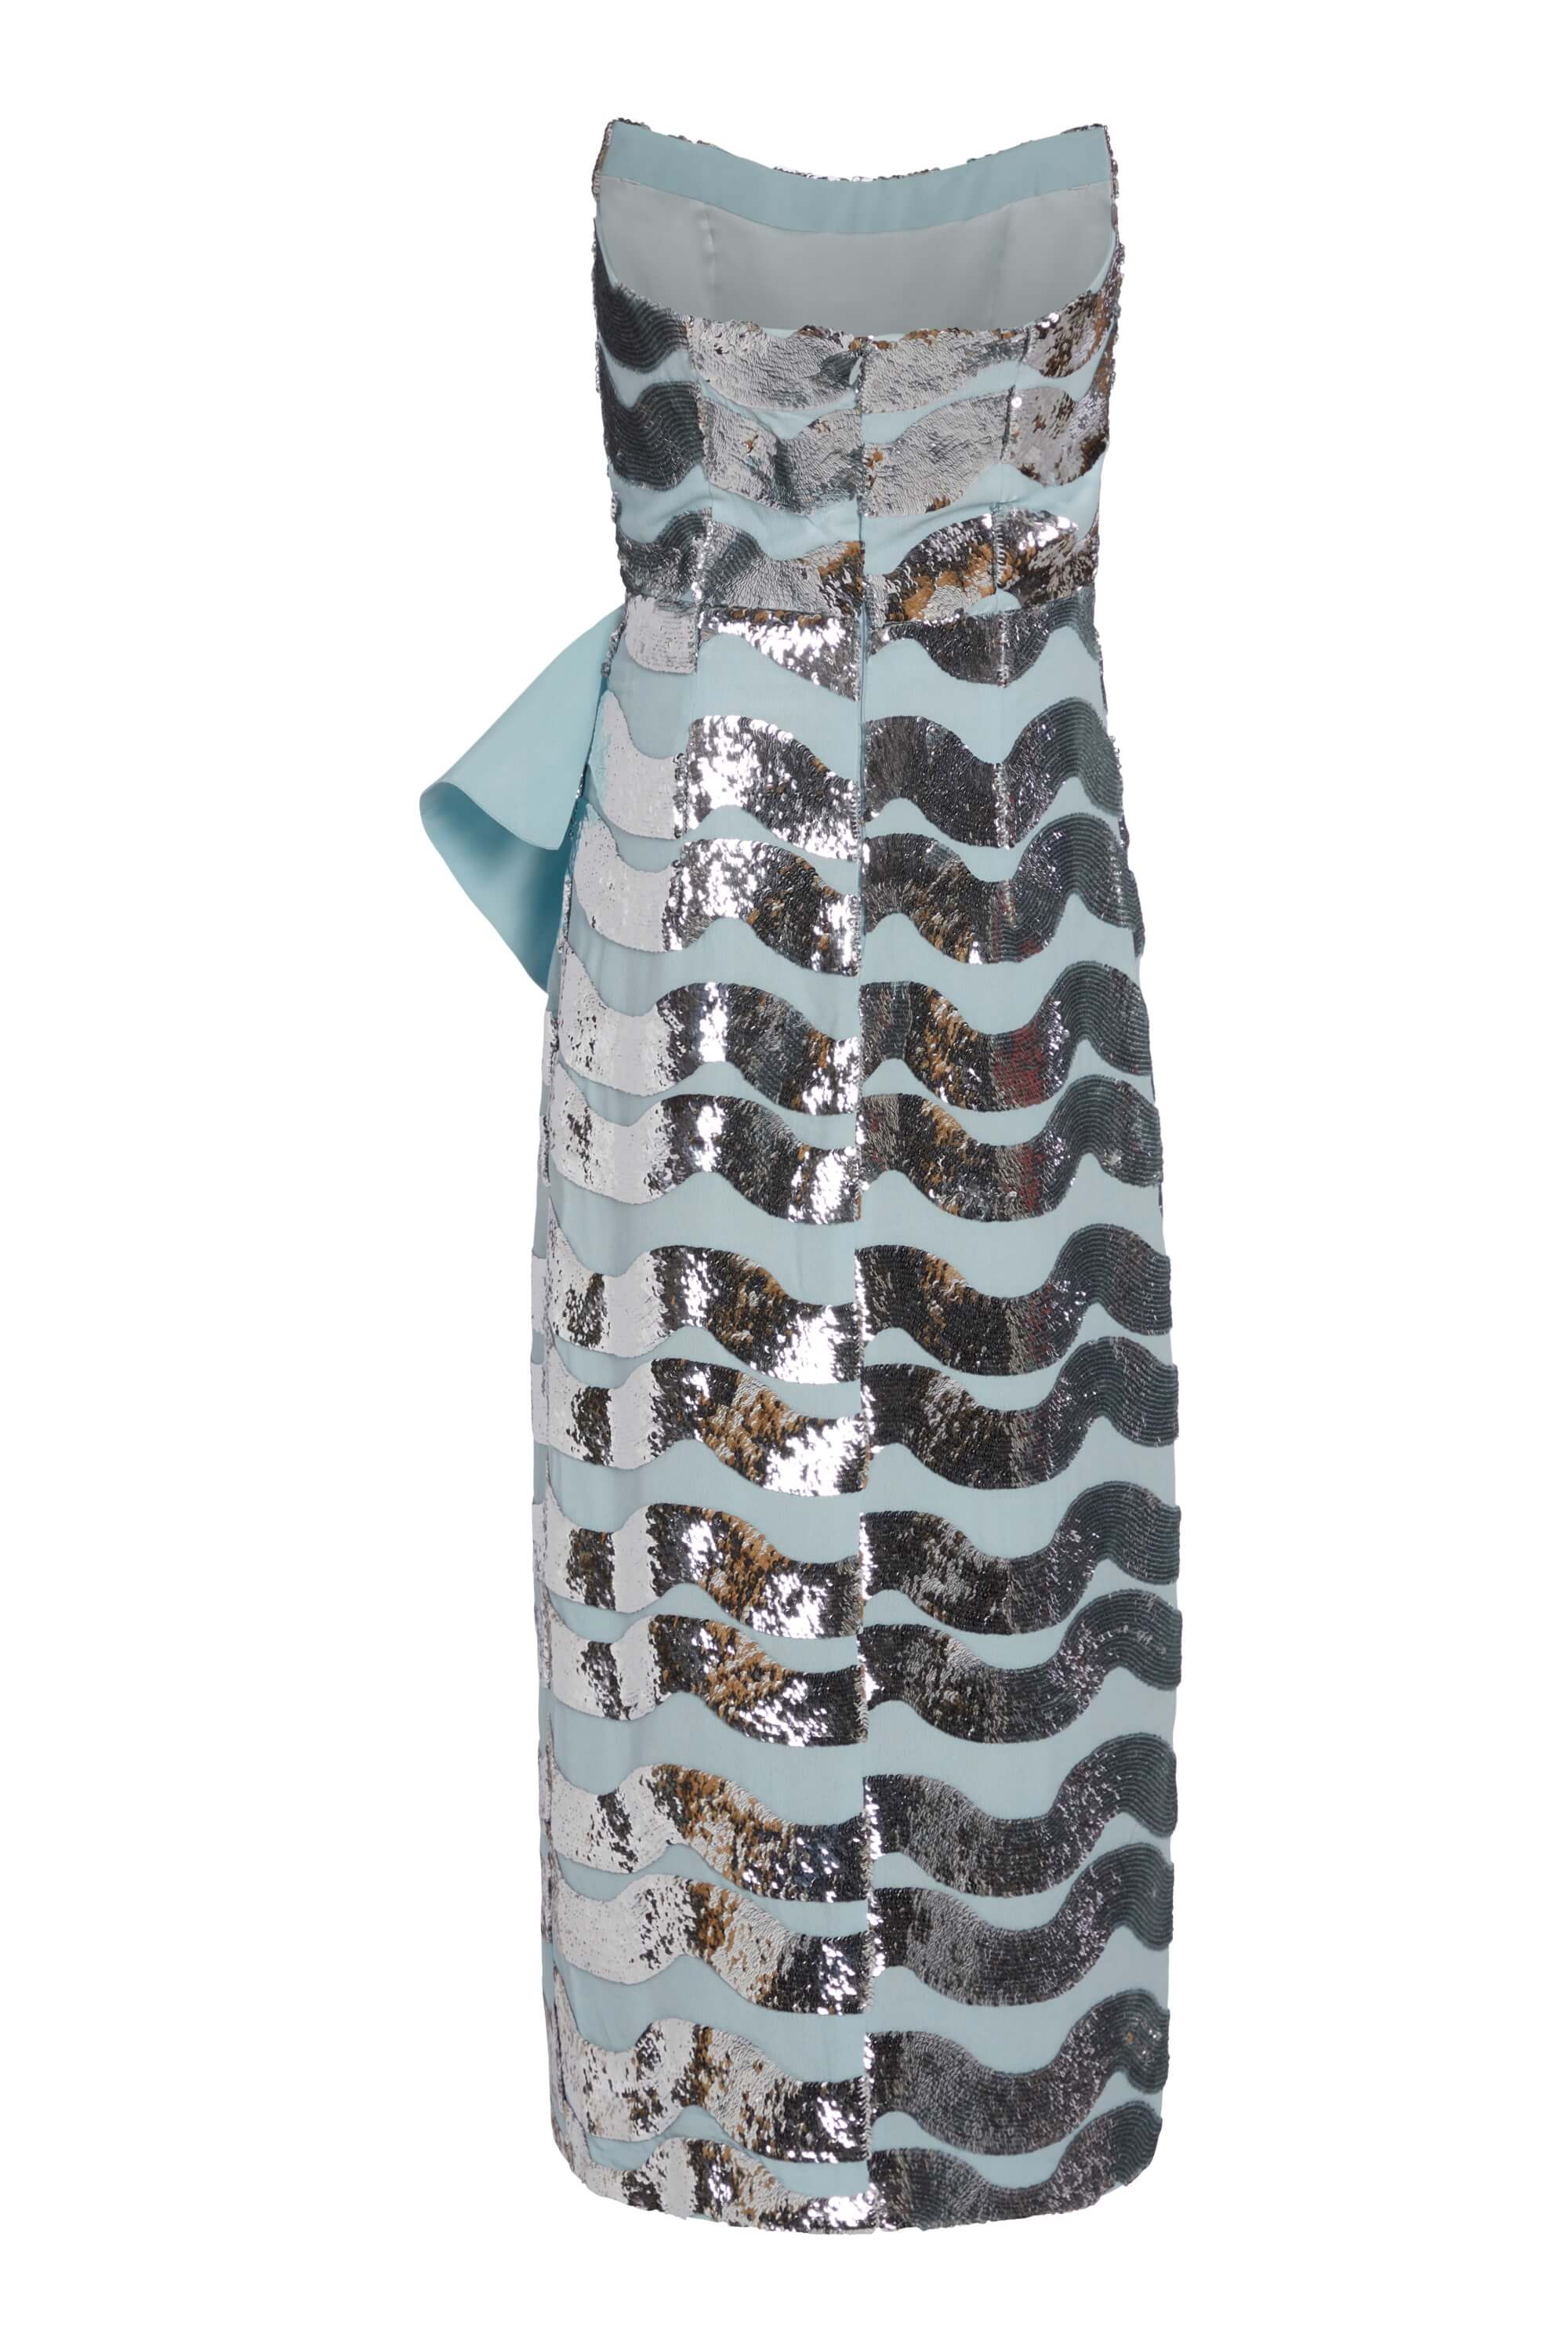 Alessia Blue Silver Sequin Strapless Midi Dress